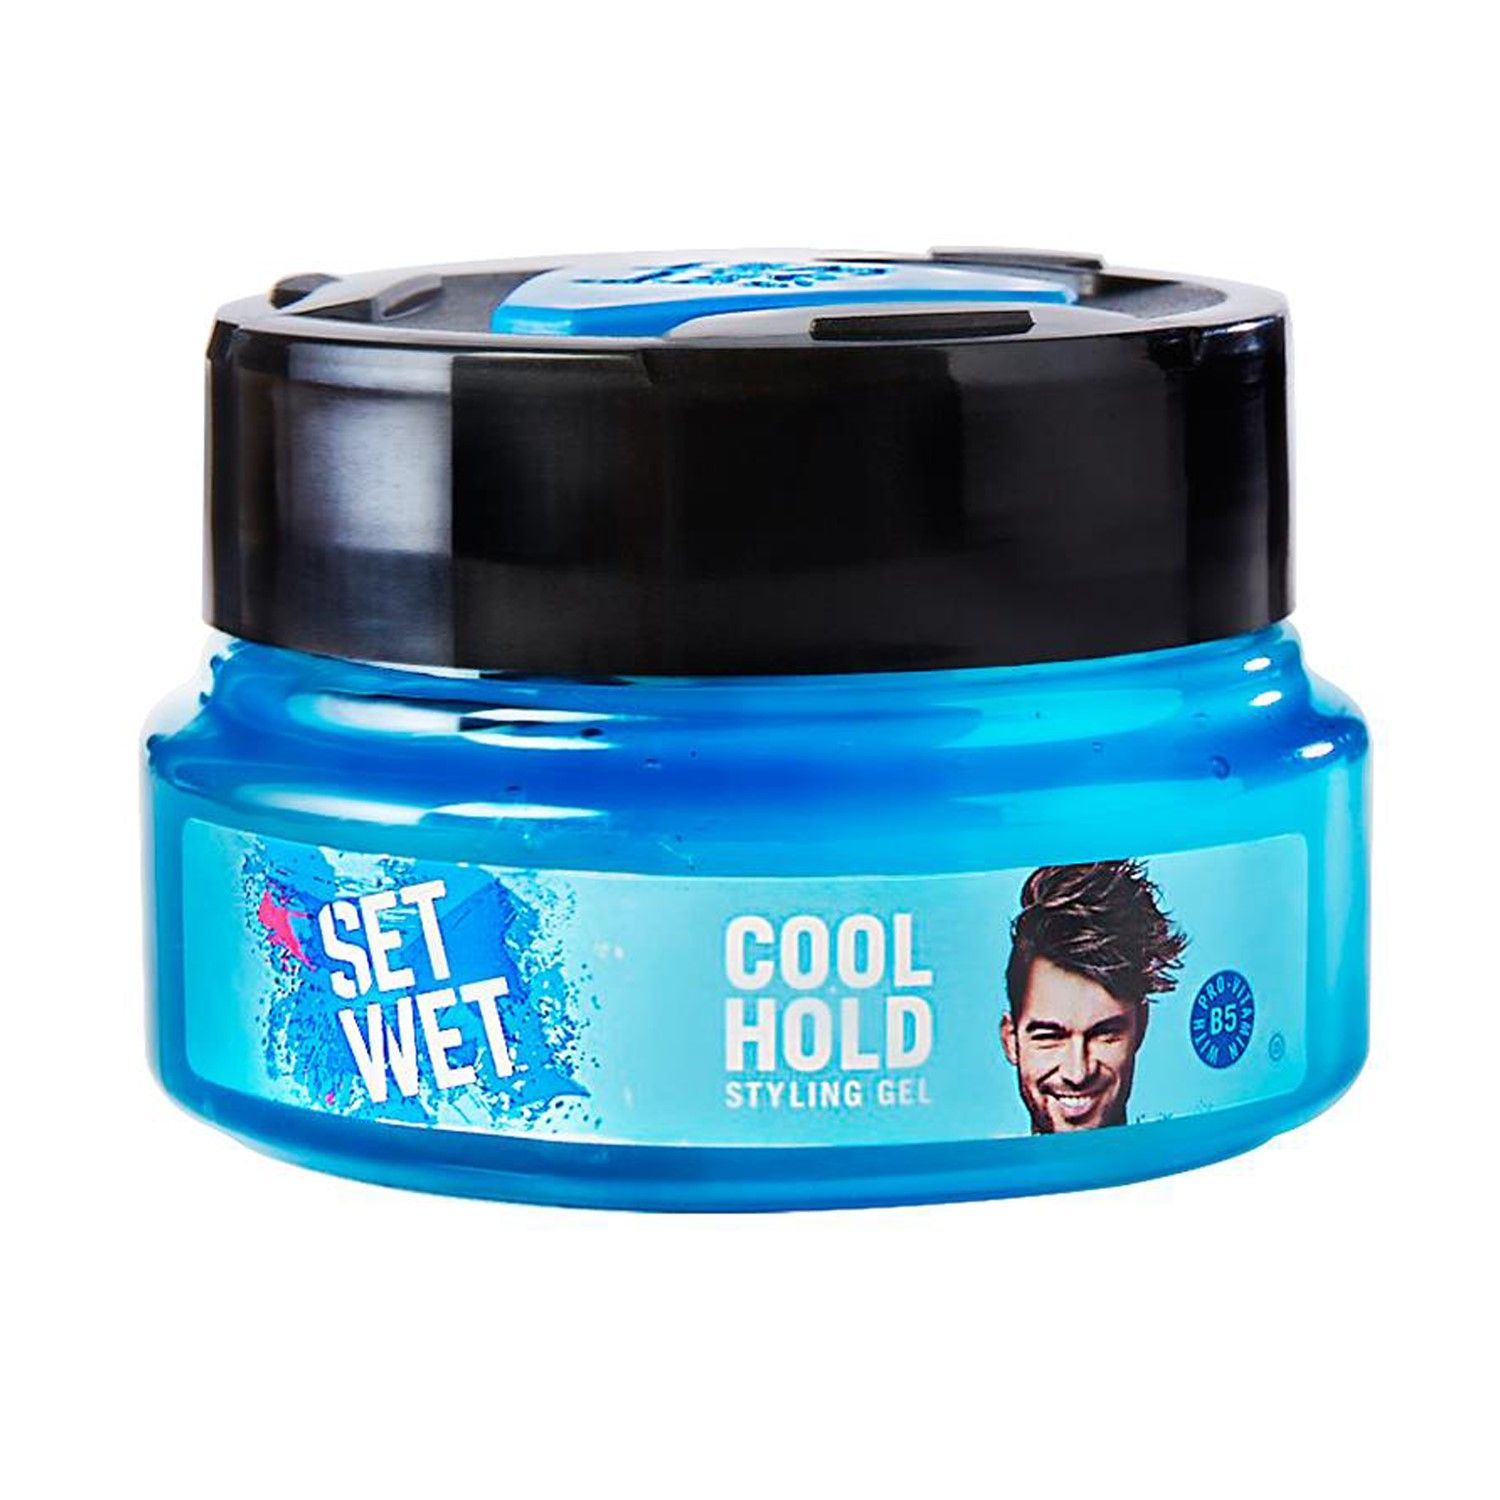 Set Wet Cool Hold Hair Gel (250 ml)